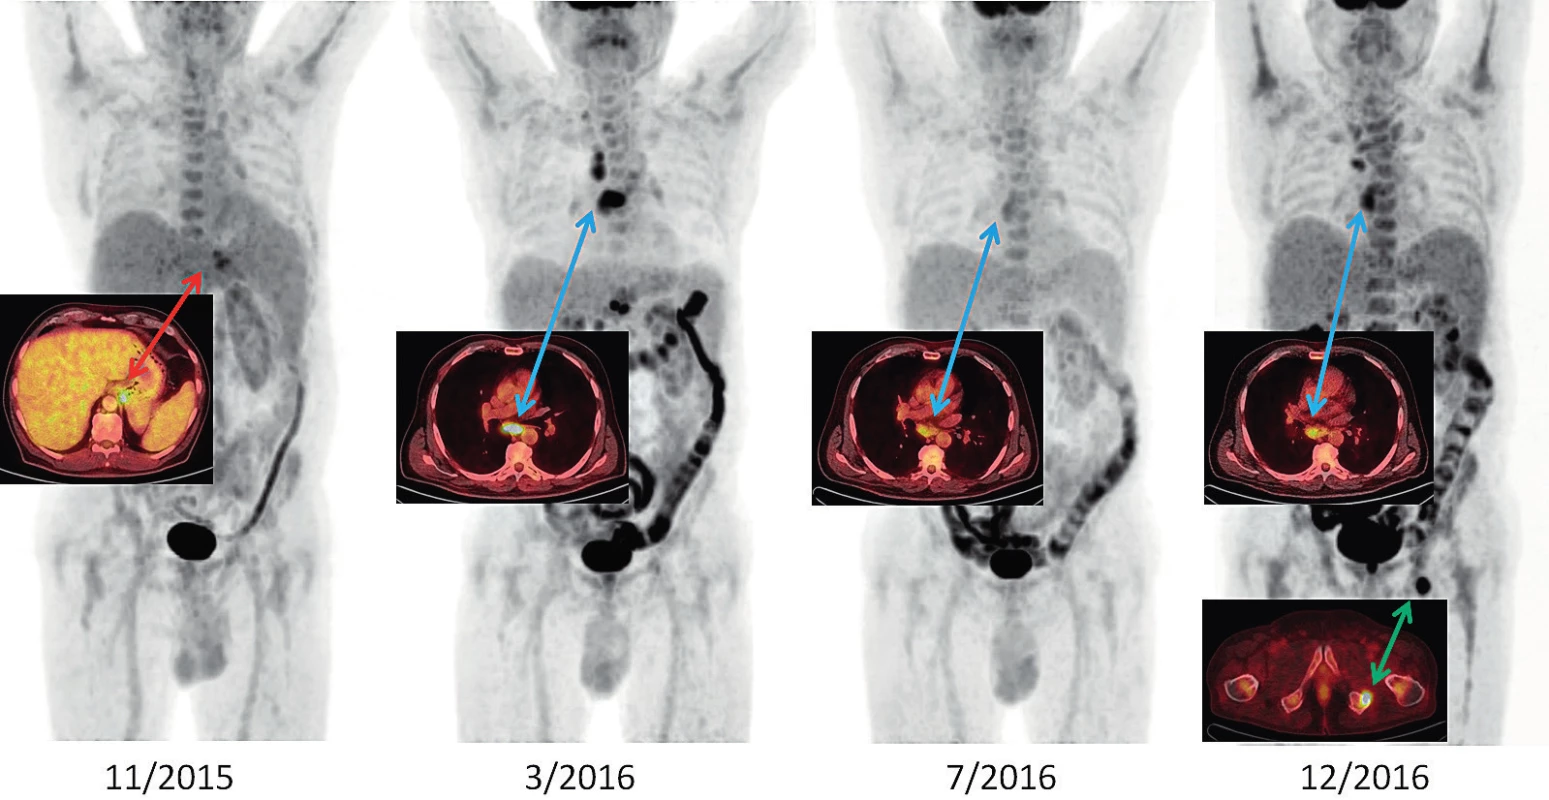 Vývoj Stillovy nemoci v období 11/2015–12/2016 v PET/CT zobrazení u našeho pacienta<br>
11/2015: metabolicky aktivní lymfadenopatie při kardii a u levého bráničního crus (SUVmax 6,1), lehce pozitivní nález v retroperitoneu a v kostní dřeni<br>
3/2016: rozvinutý nález, lymfadenopatie za pravou klíční kostí, v mediastinu SUVmax 10,1; v retroperitoneu SUVmax 10,1; kostní dřeň lehce pozitivní<br>
7/2016: negativní PET/CT obraz, velikostně regrese uzlin, akumulace jen hraniční, remise nemoci<br>
12/2016: progrese nemoci hlavně v mediastinu a nově ložisko v sedací kosti vlevo (před léčbou anakinrou)